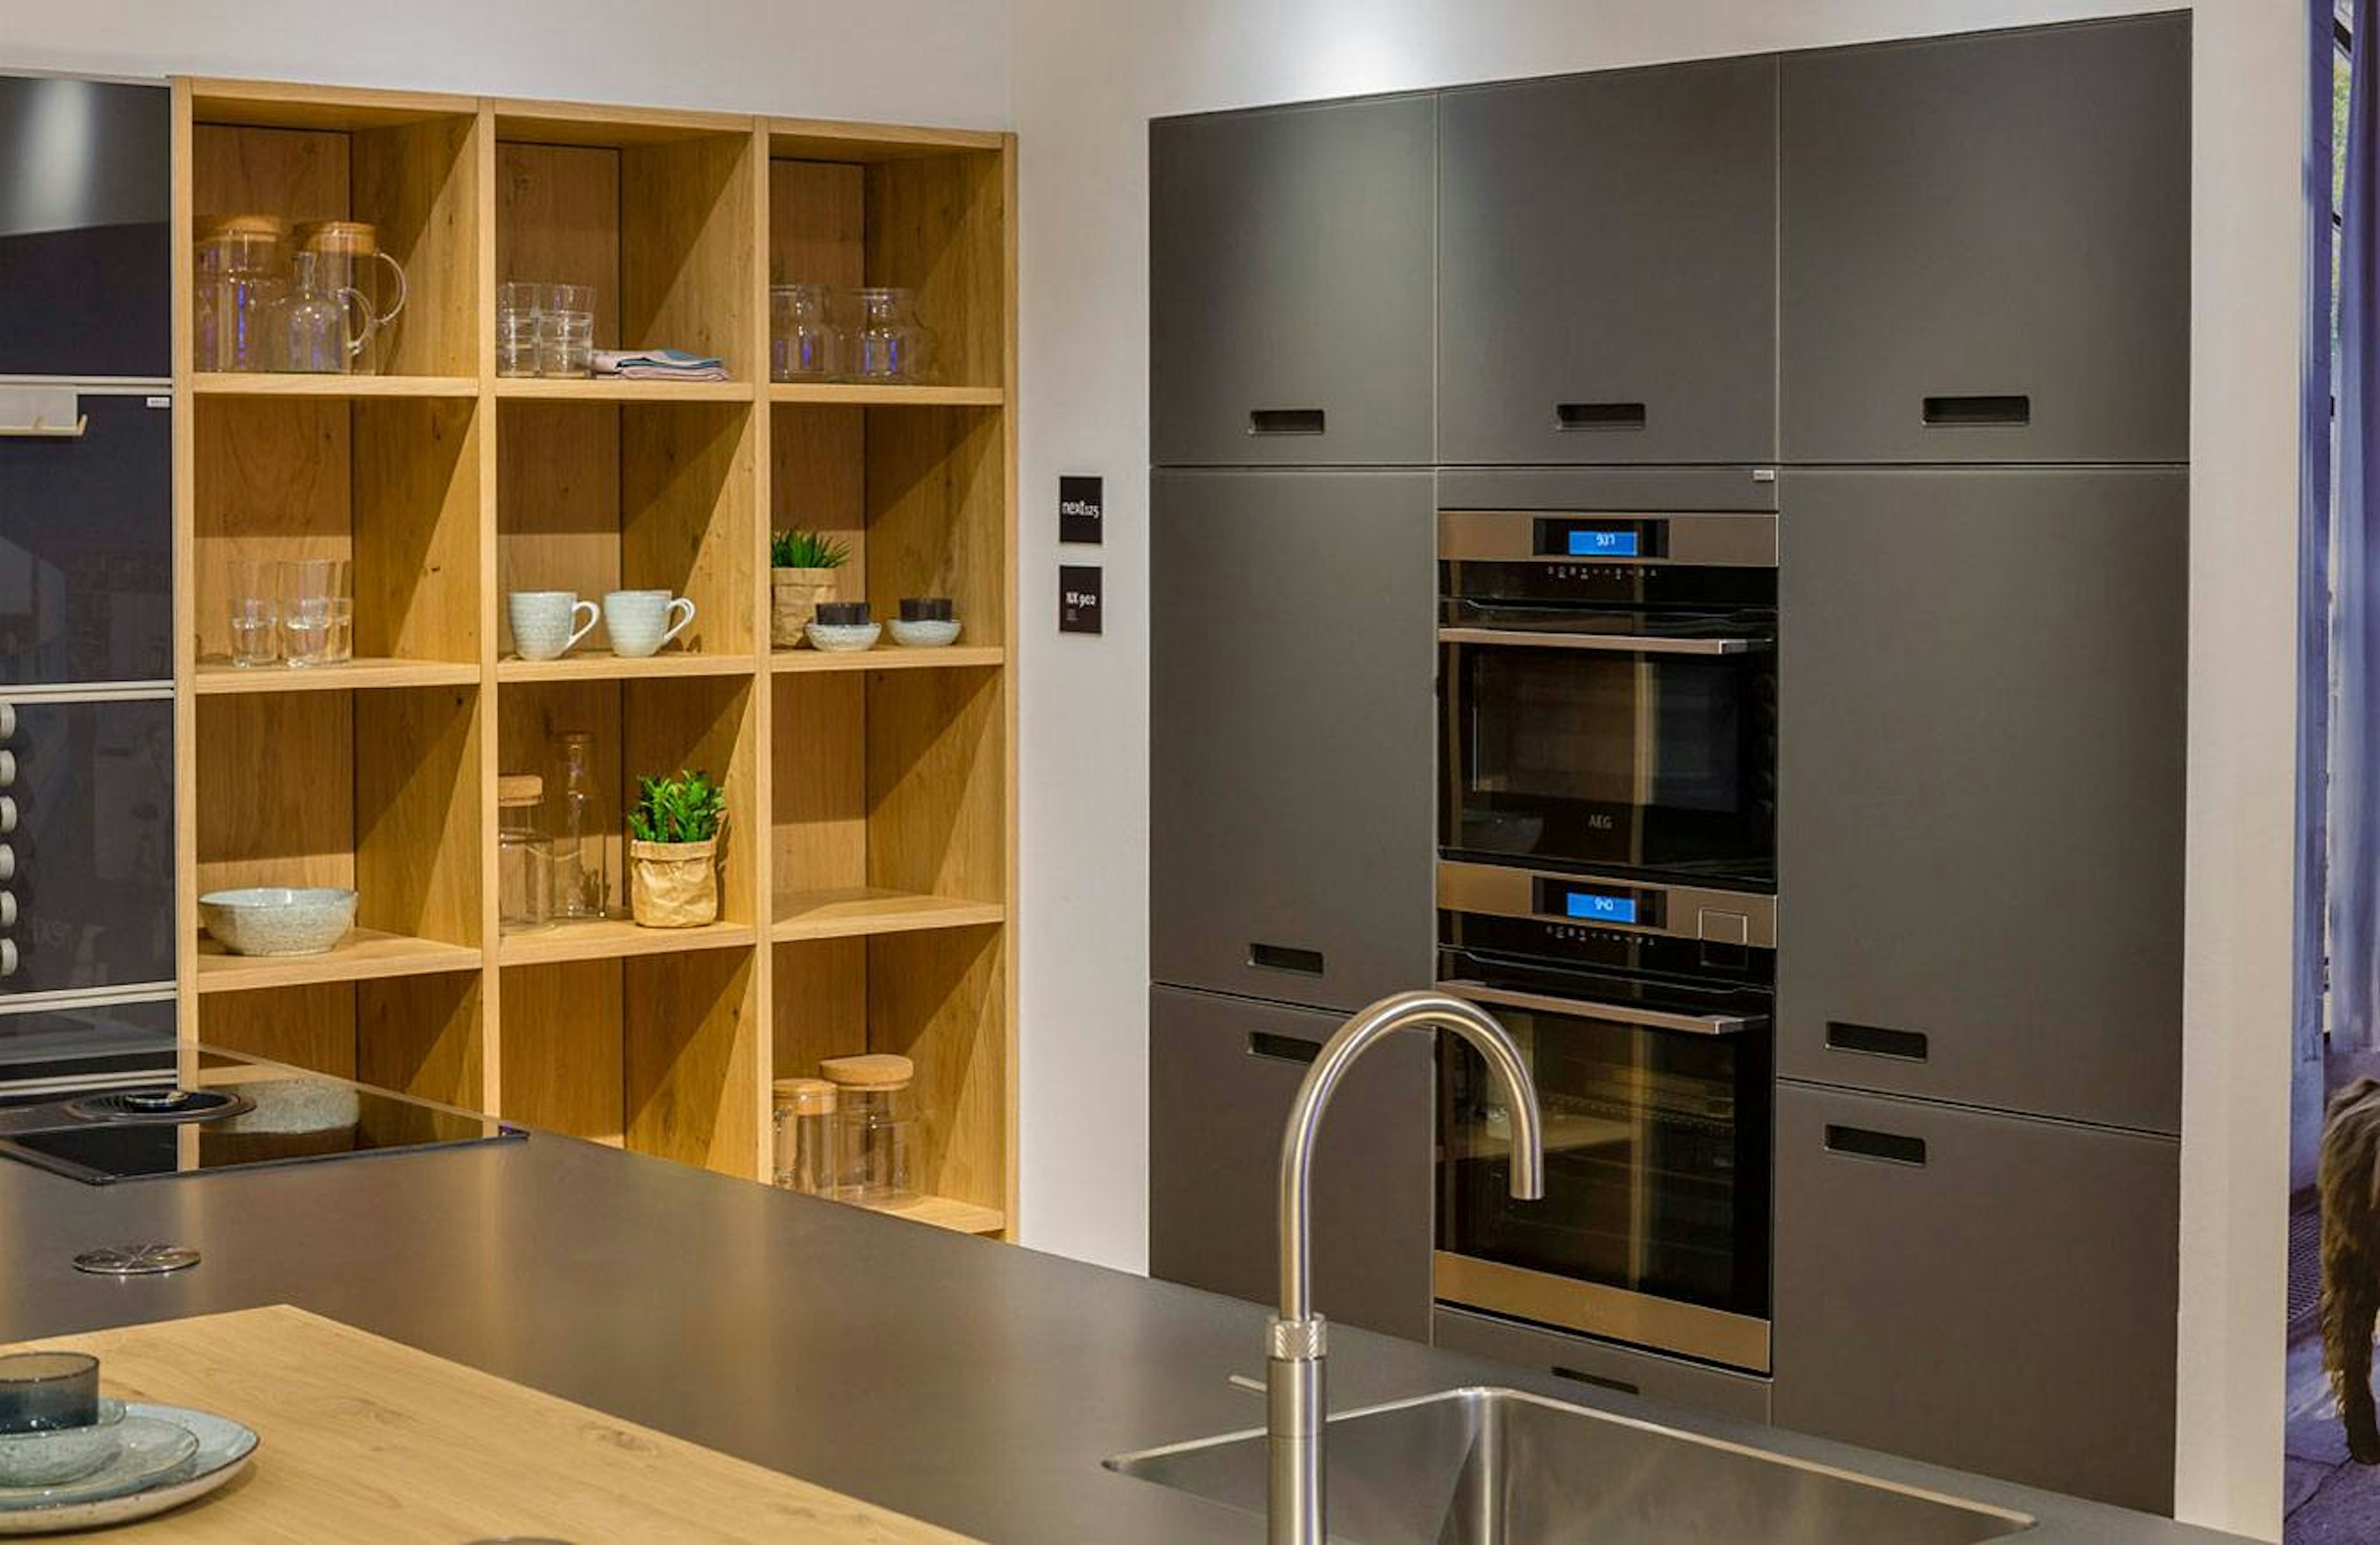 De strakke keuken is voorzien van een ruime kastenwand met moderne inbouwapparatuur.